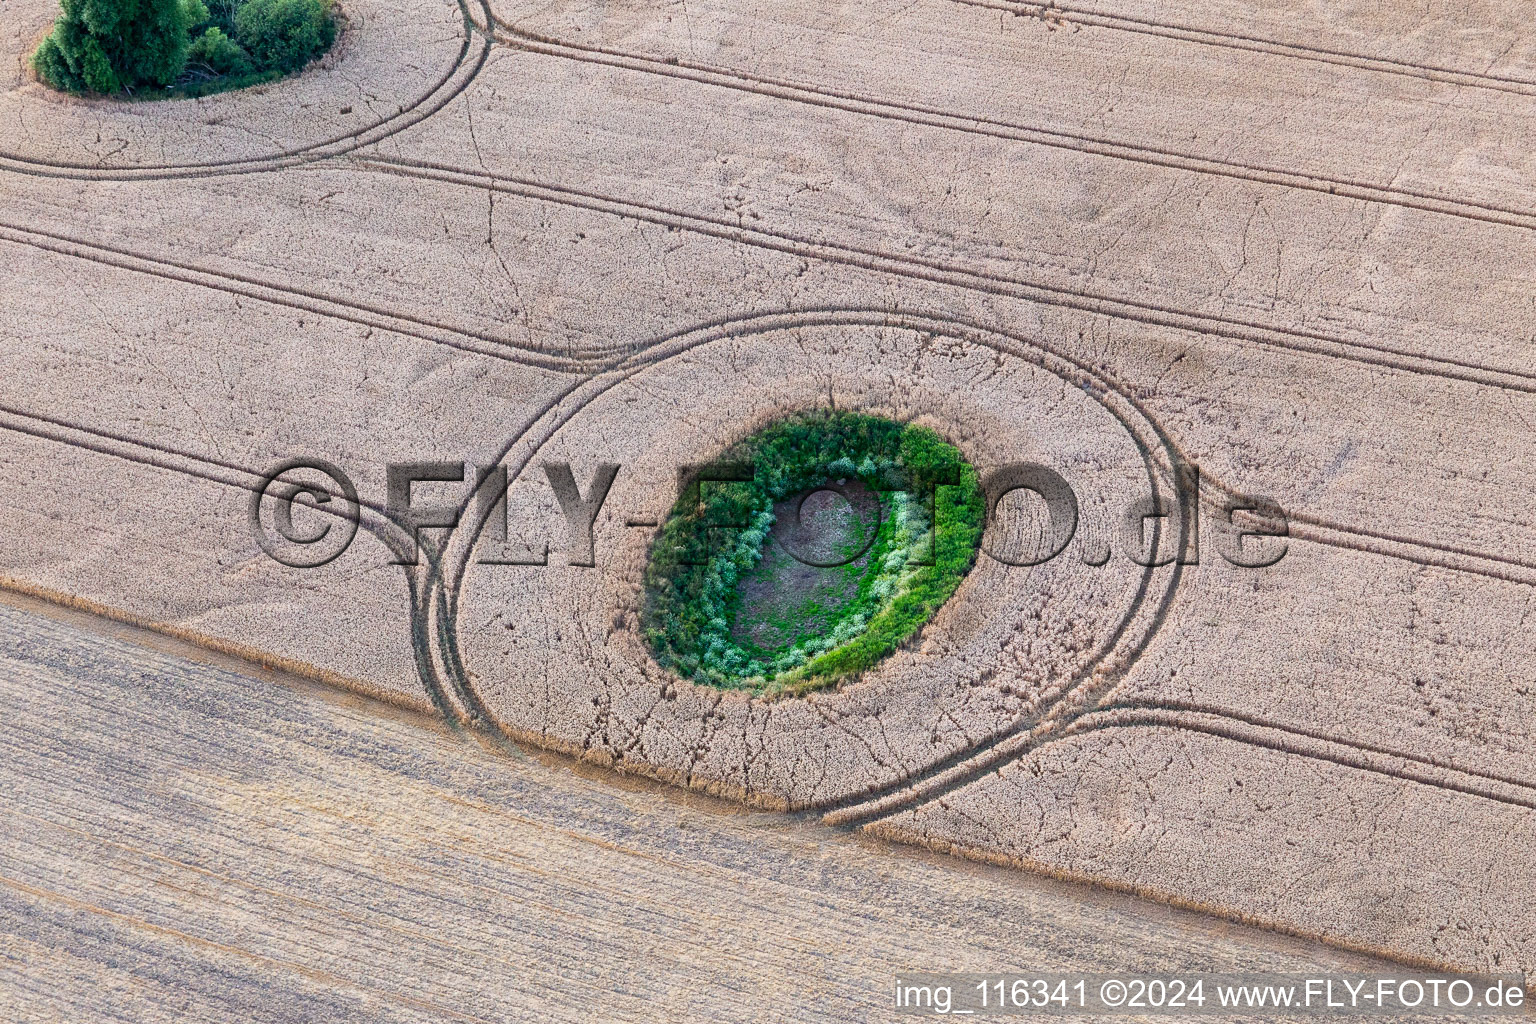 Photographie aérienne de Structure du champ de céréales rondes : Toteissee dans le champ de l'Uckermark à Gerswalde dans le département Brandebourg, Allemagne